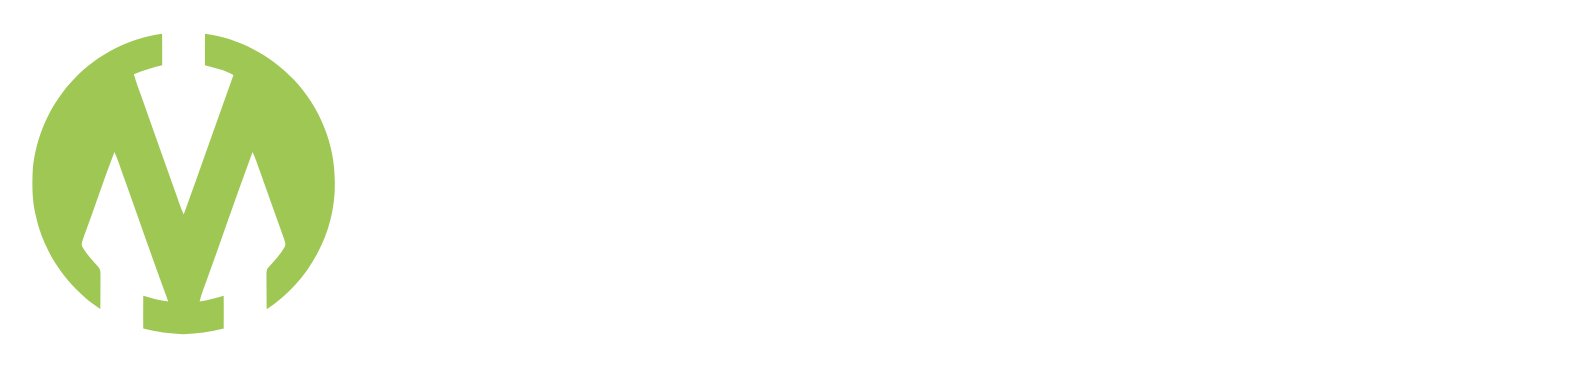 Montauk Renewables logo large for dark backgrounds (transparent PNG)